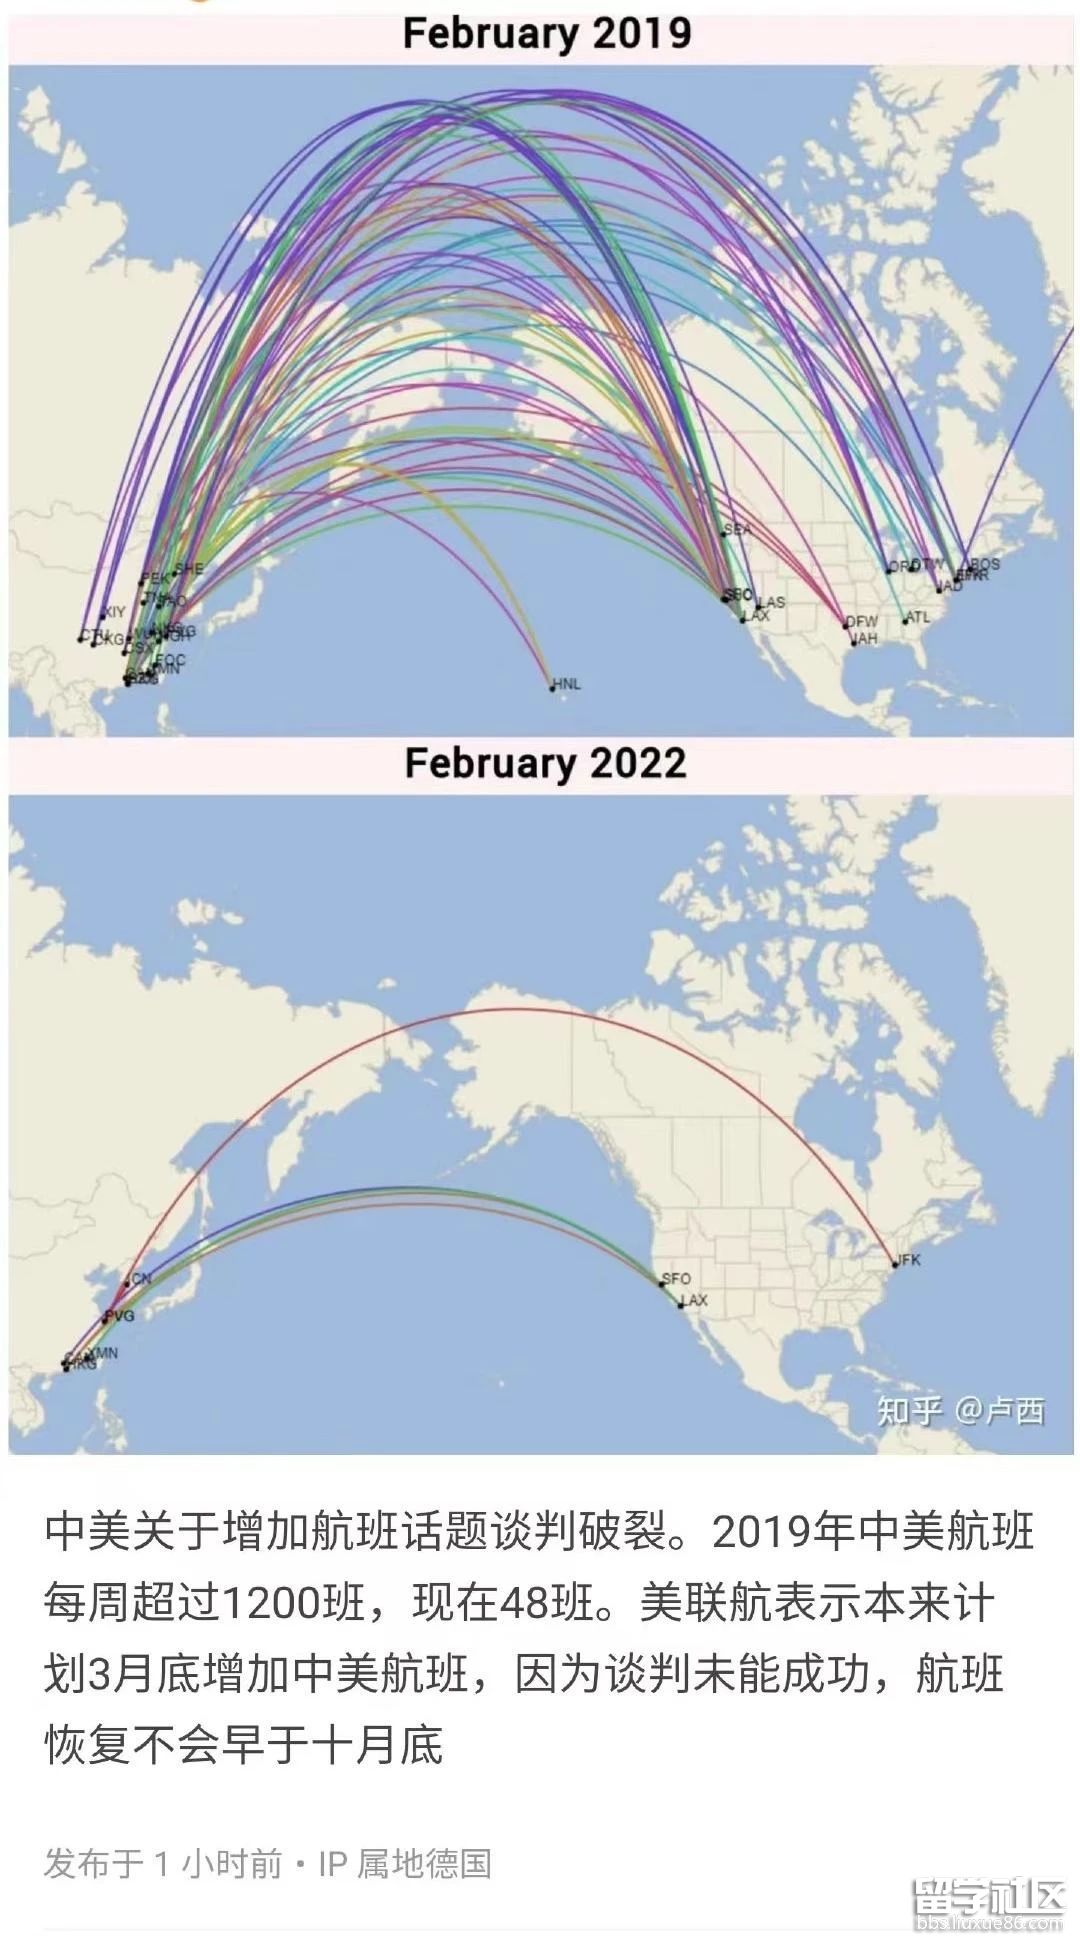 2023年冬春航季南航集团计划执行航班超46万班次_航线_广州_旅客